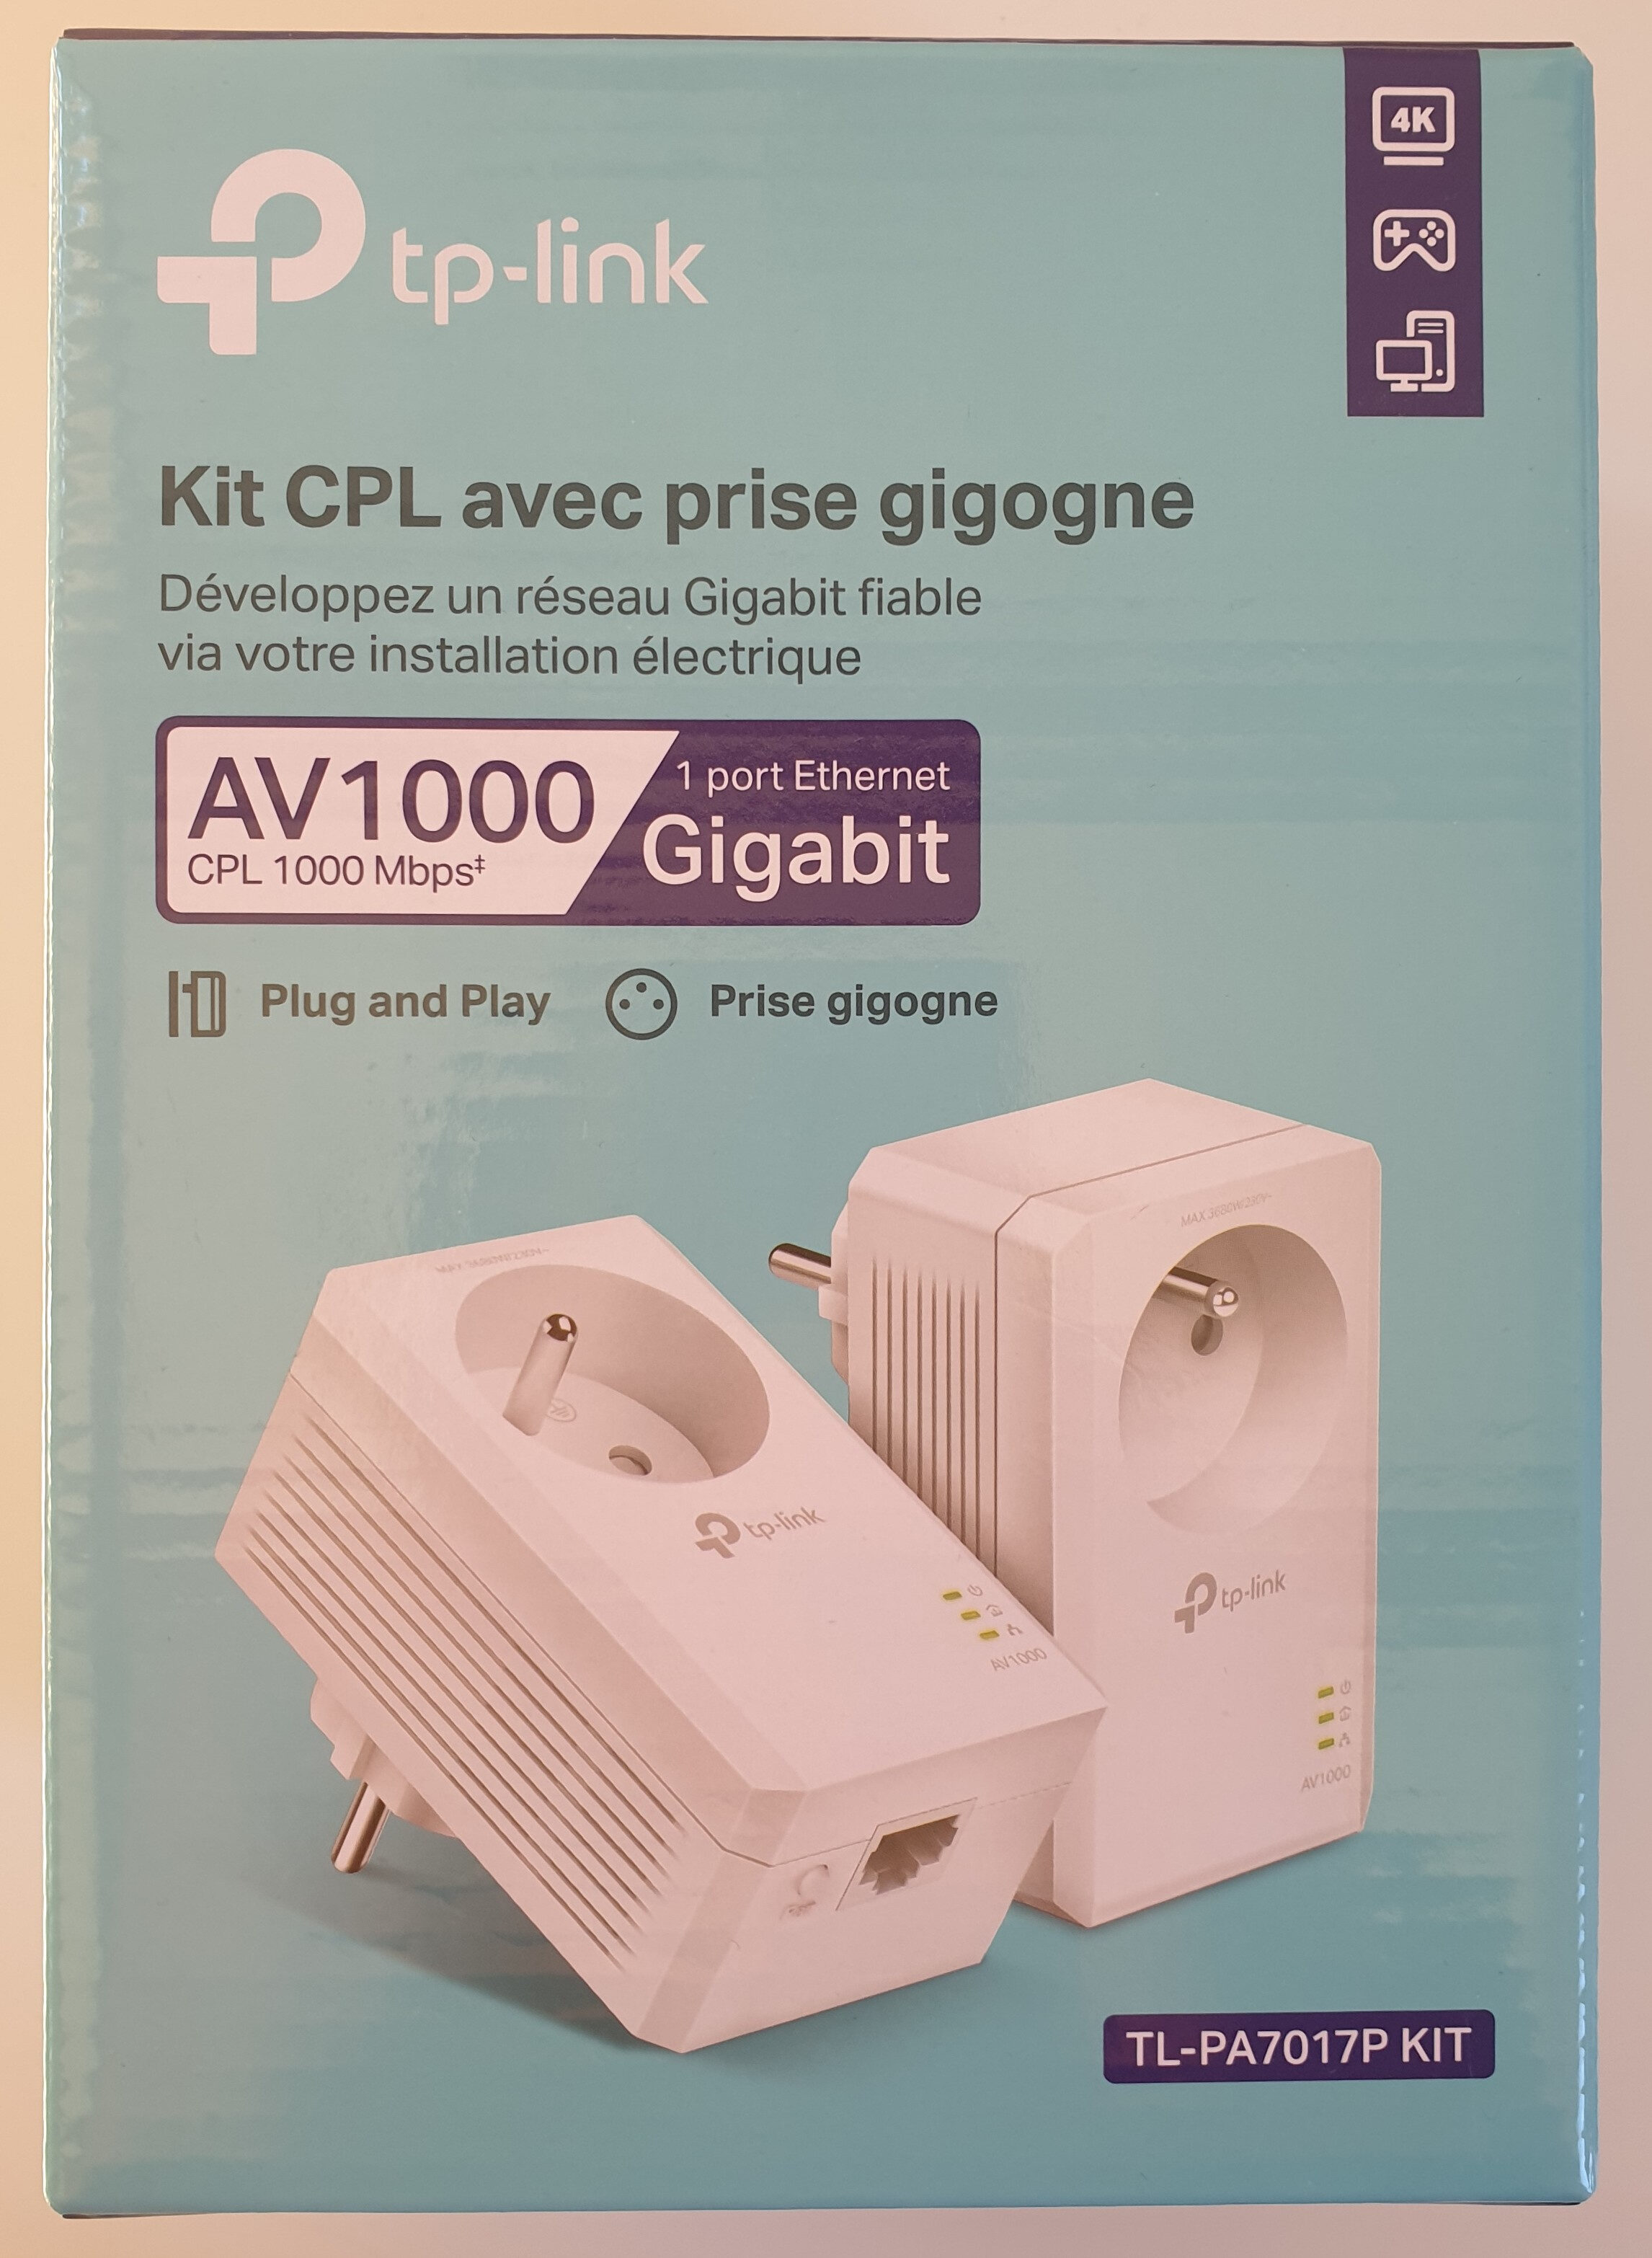 Kit CPL avec prise gigogne. AV 1000. TL-PA7017P KIT - Produit - fr